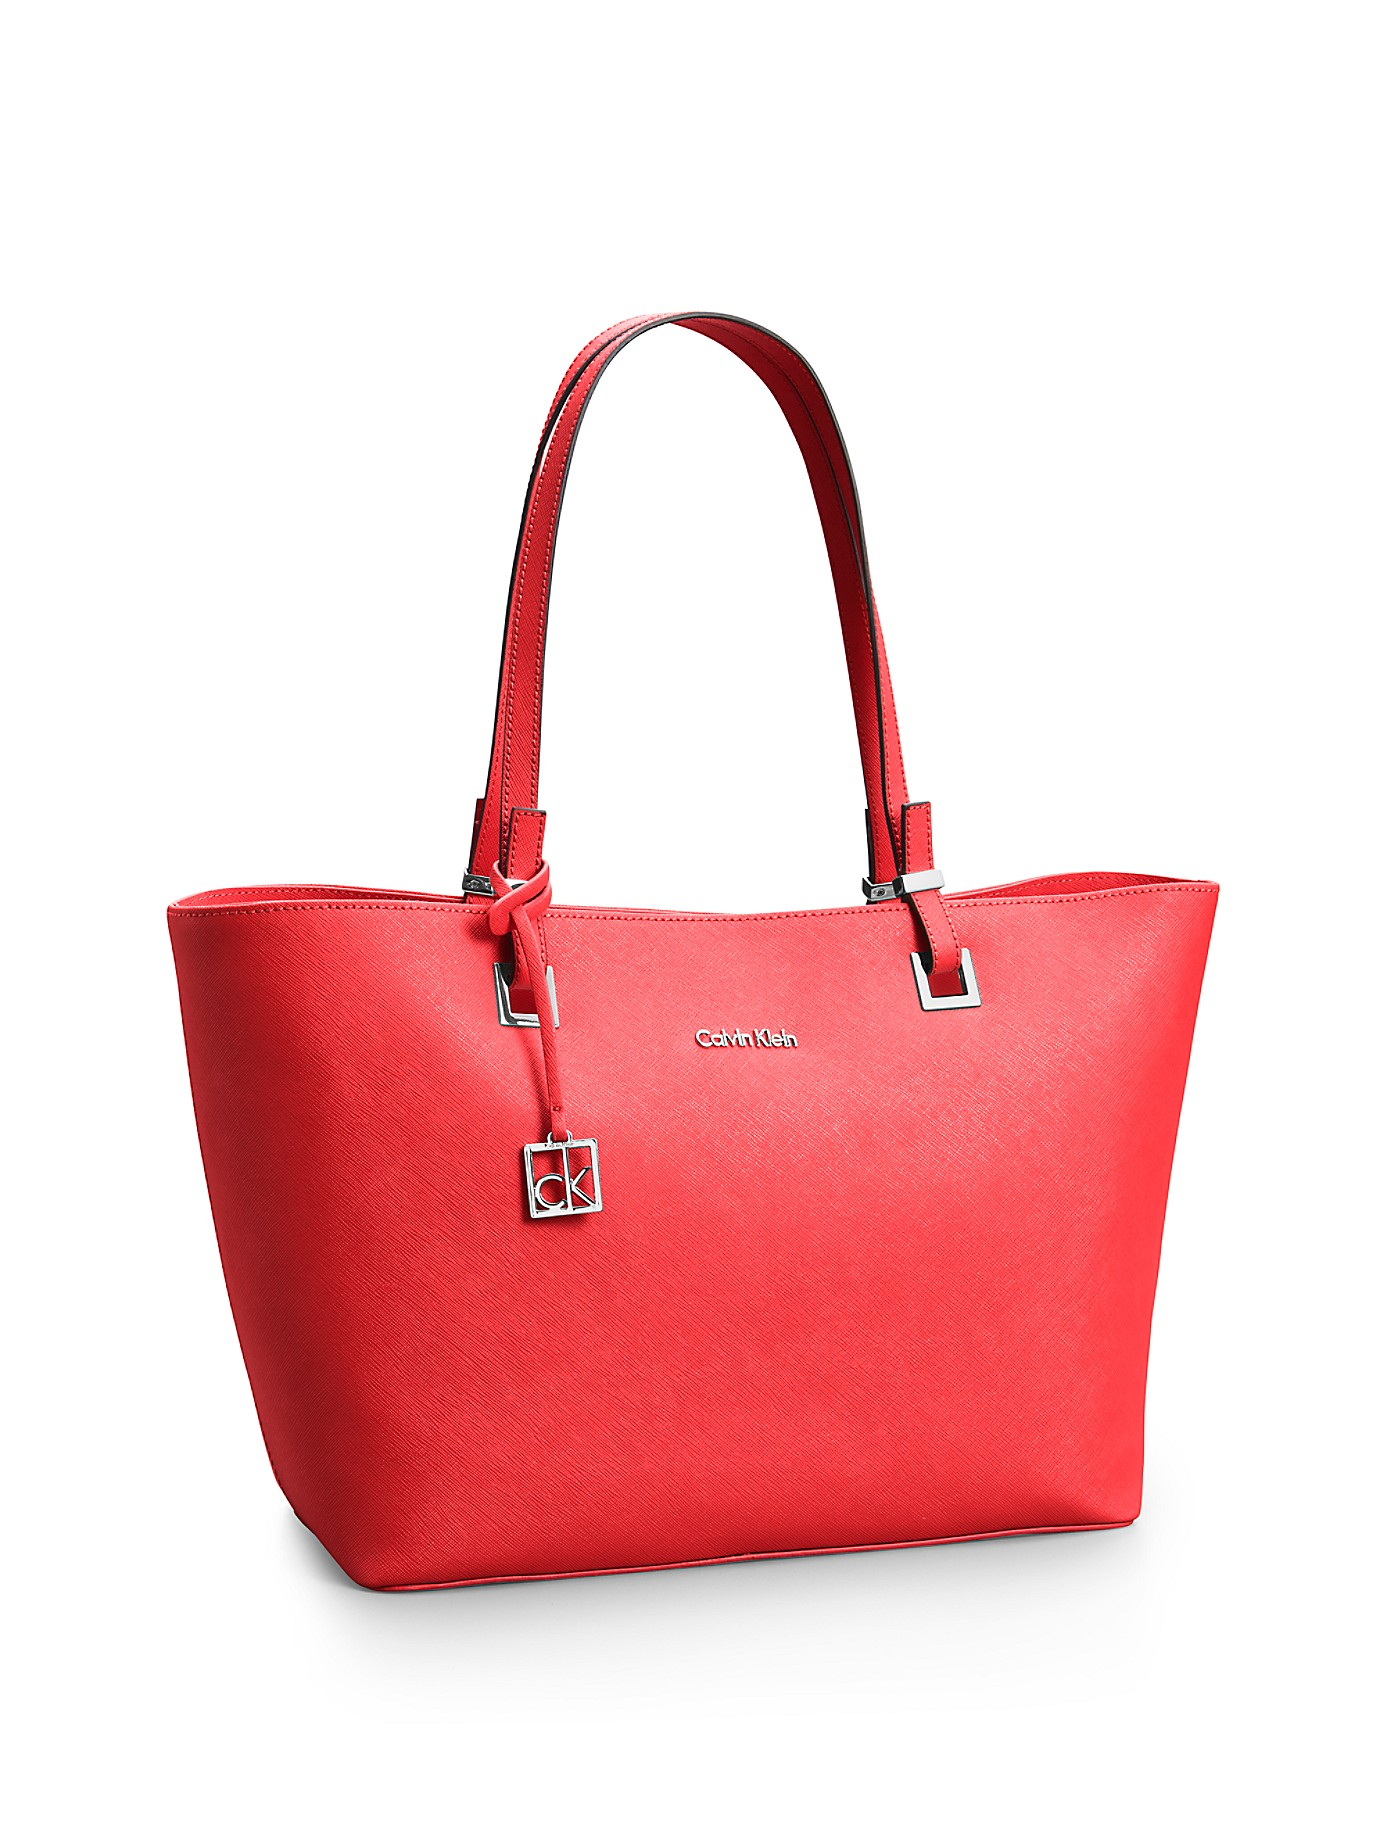 hardwerkend beest ondersteuning Calvin Klein Scarlett Saffiano Leather Shopper Tote in Red | Lyst